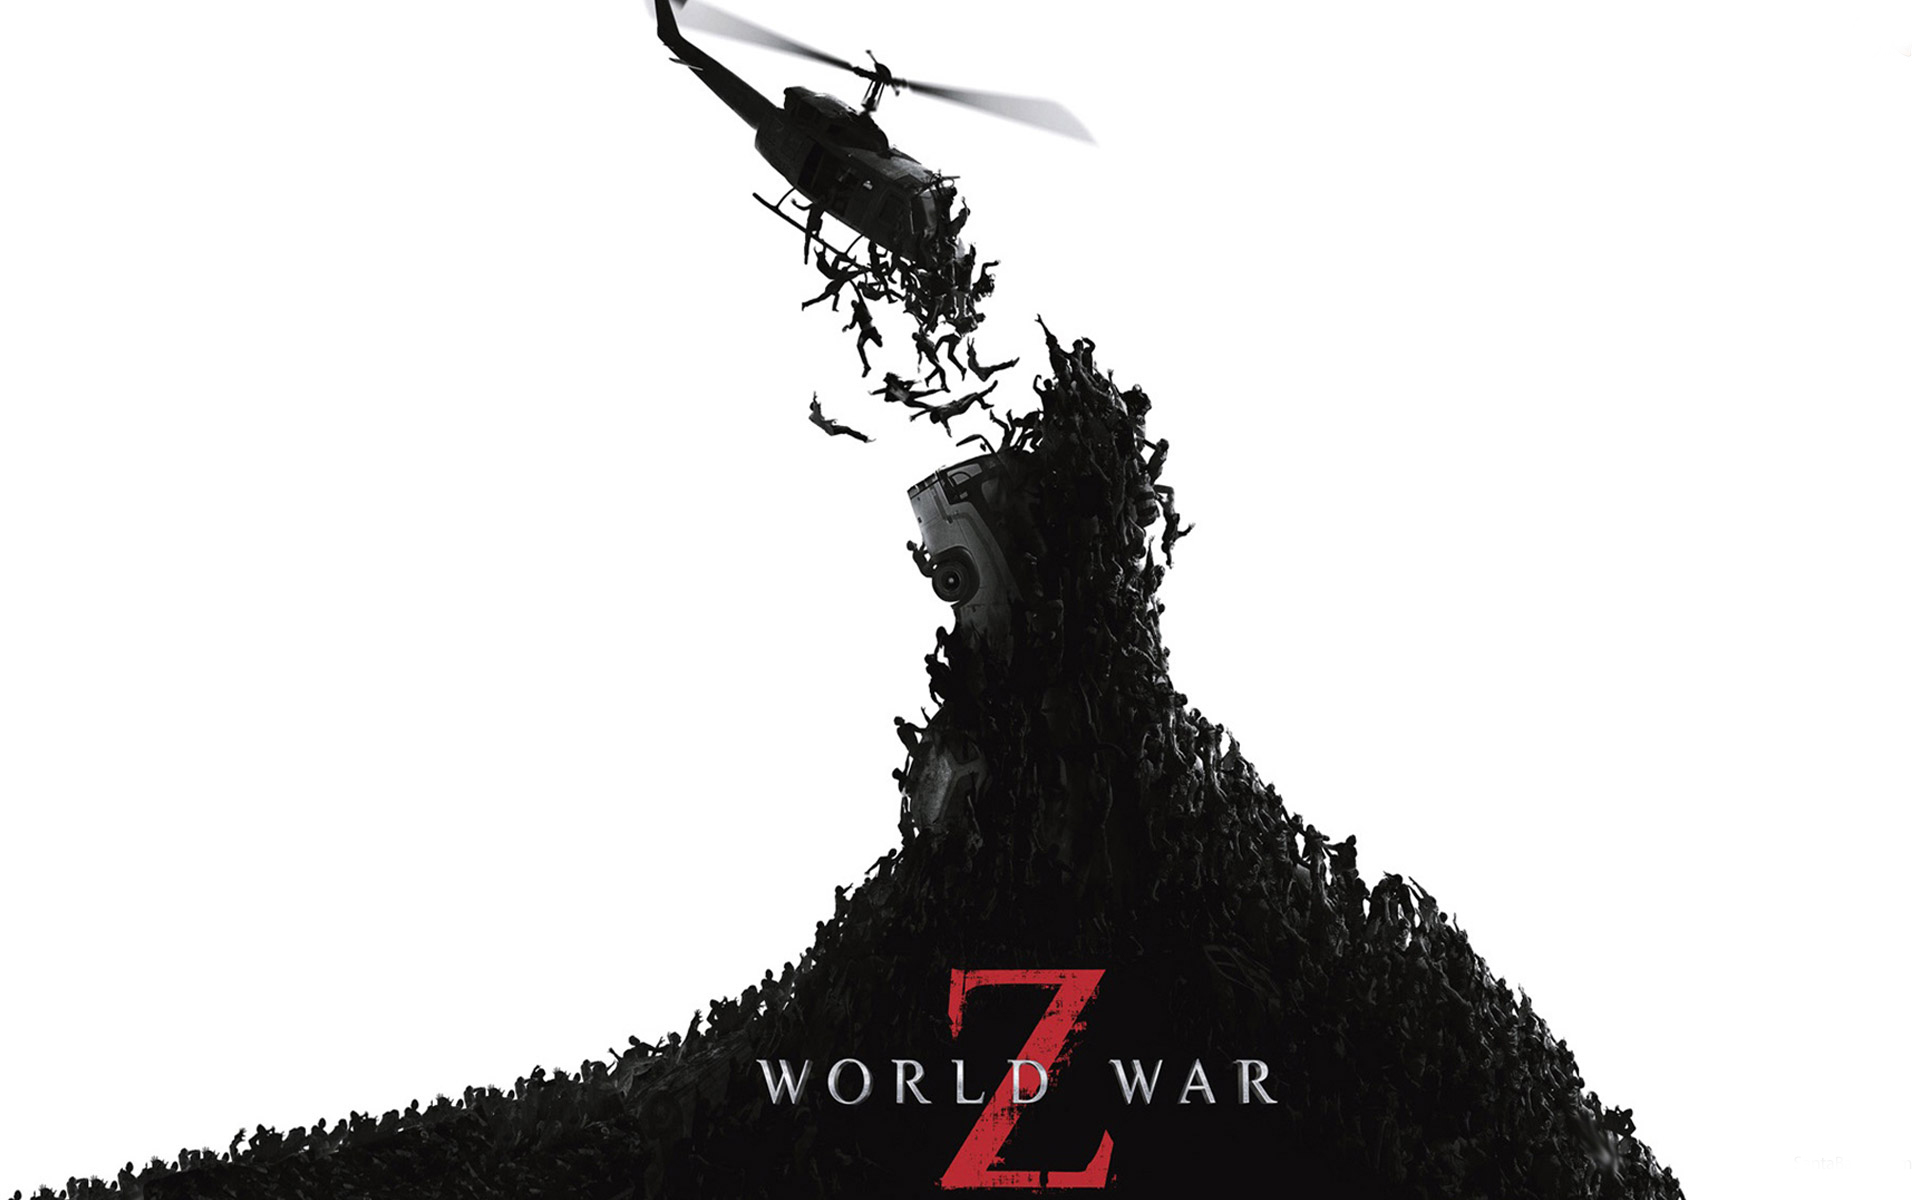 world-war-z-new-movie-poster-download-free.jpg